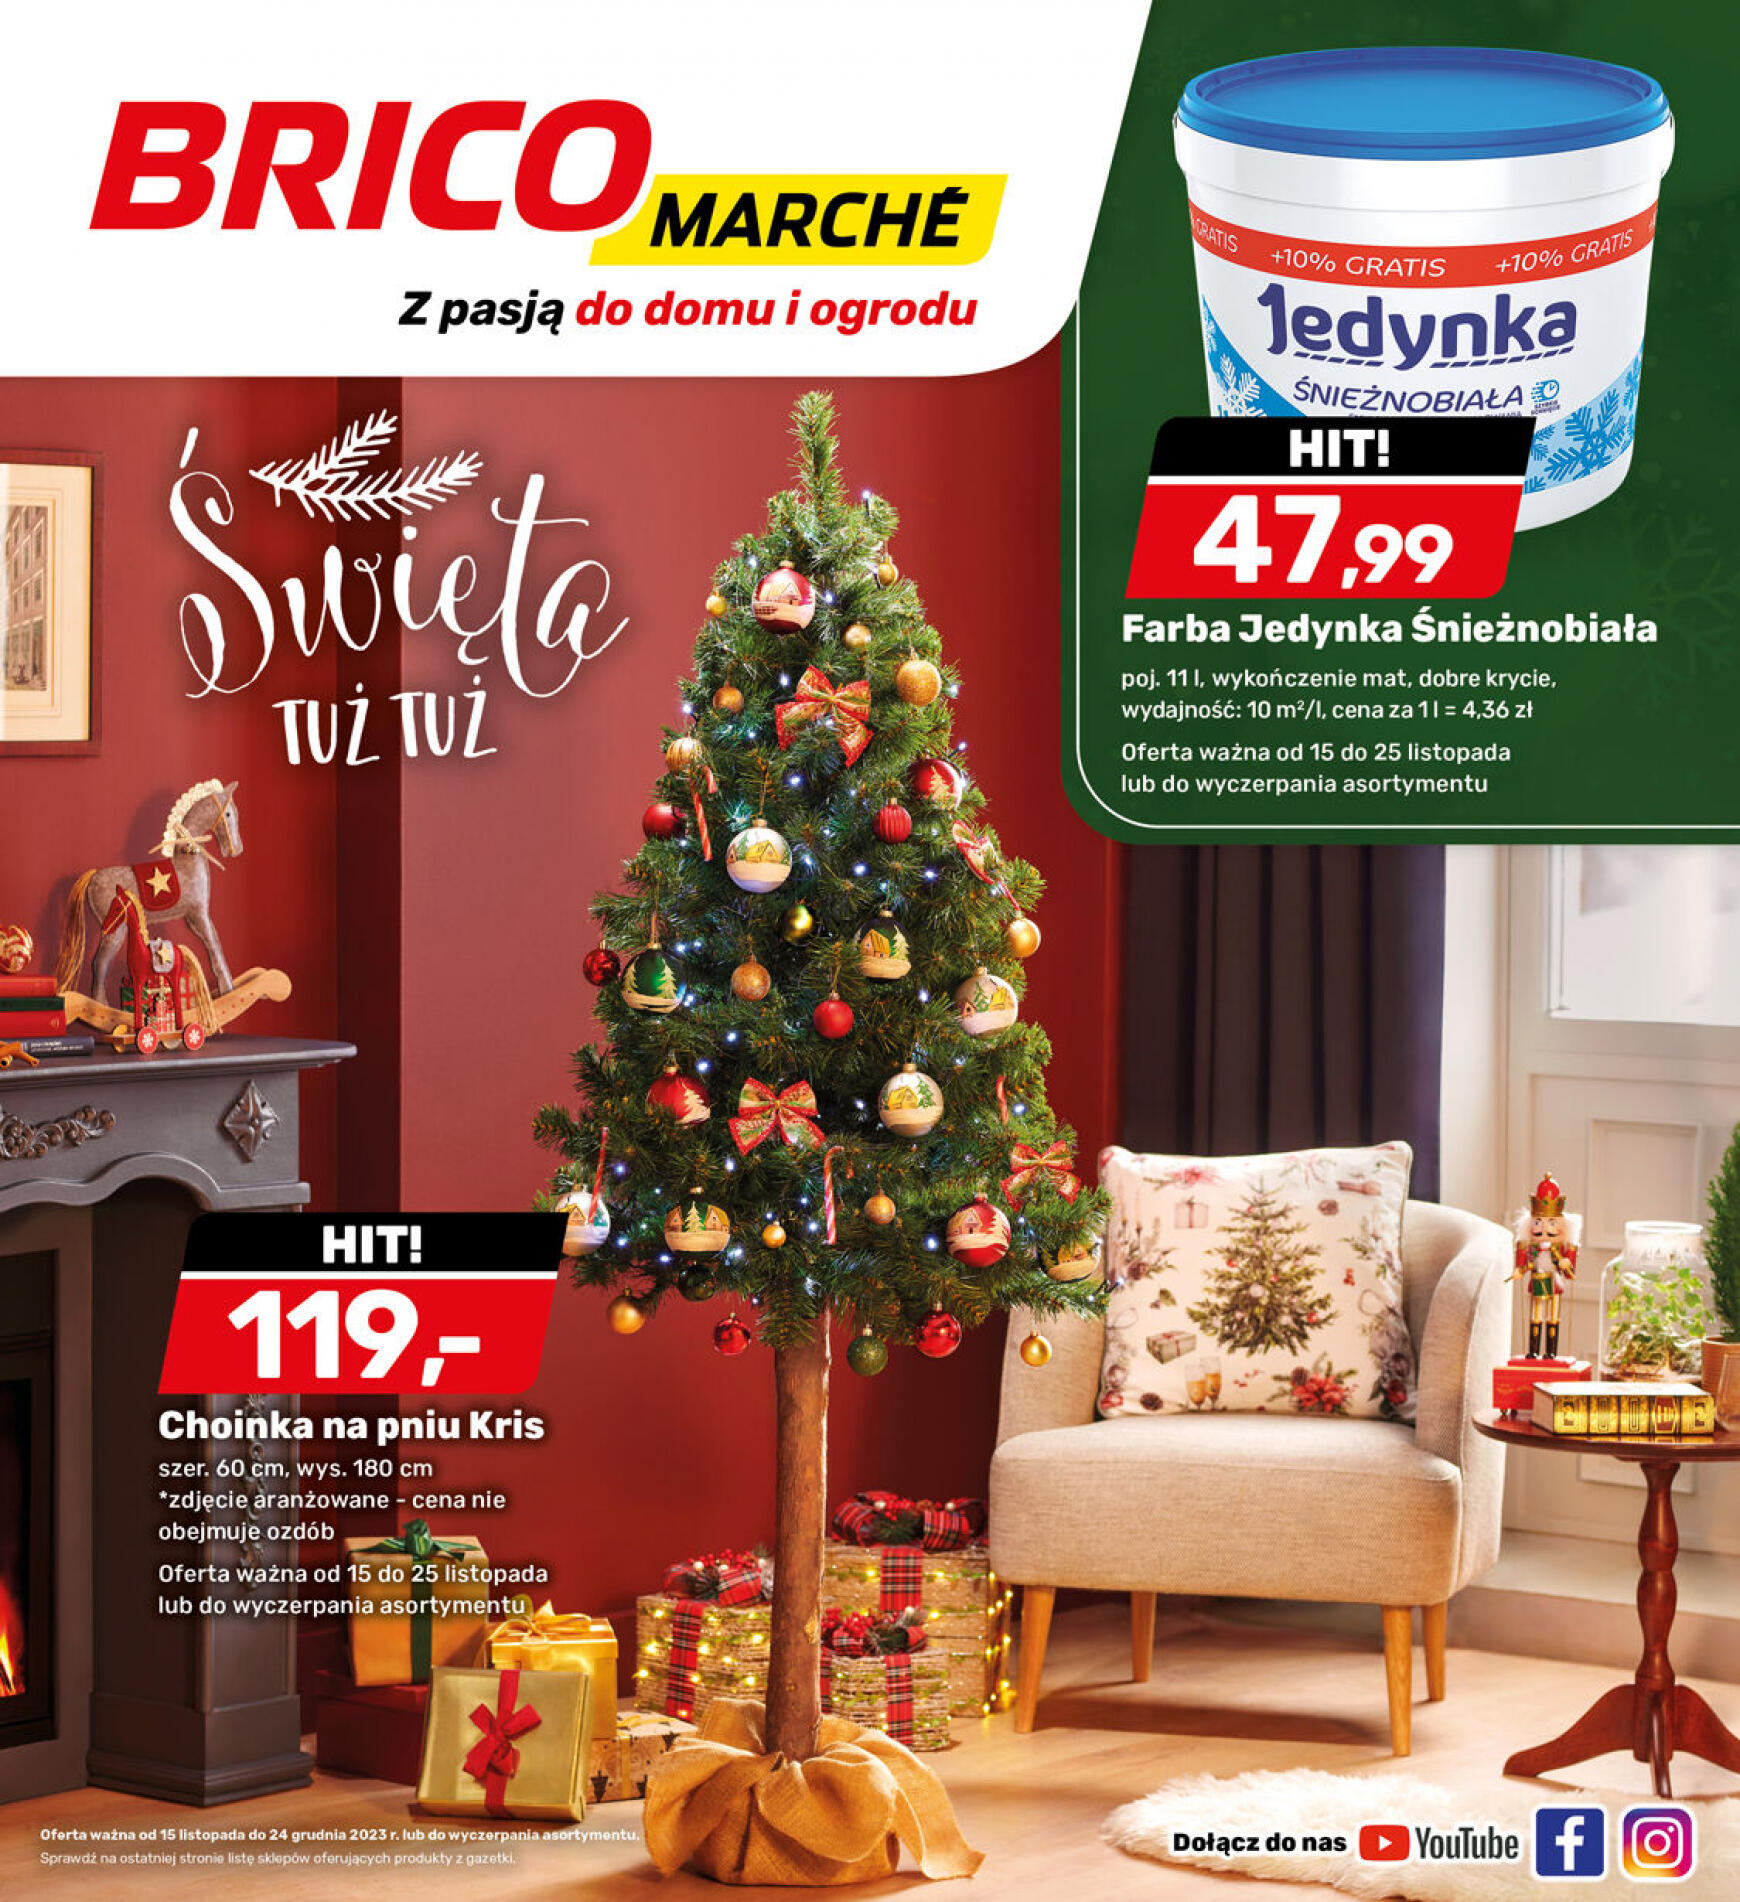 brico-marche - - Bricomarche - page: 19